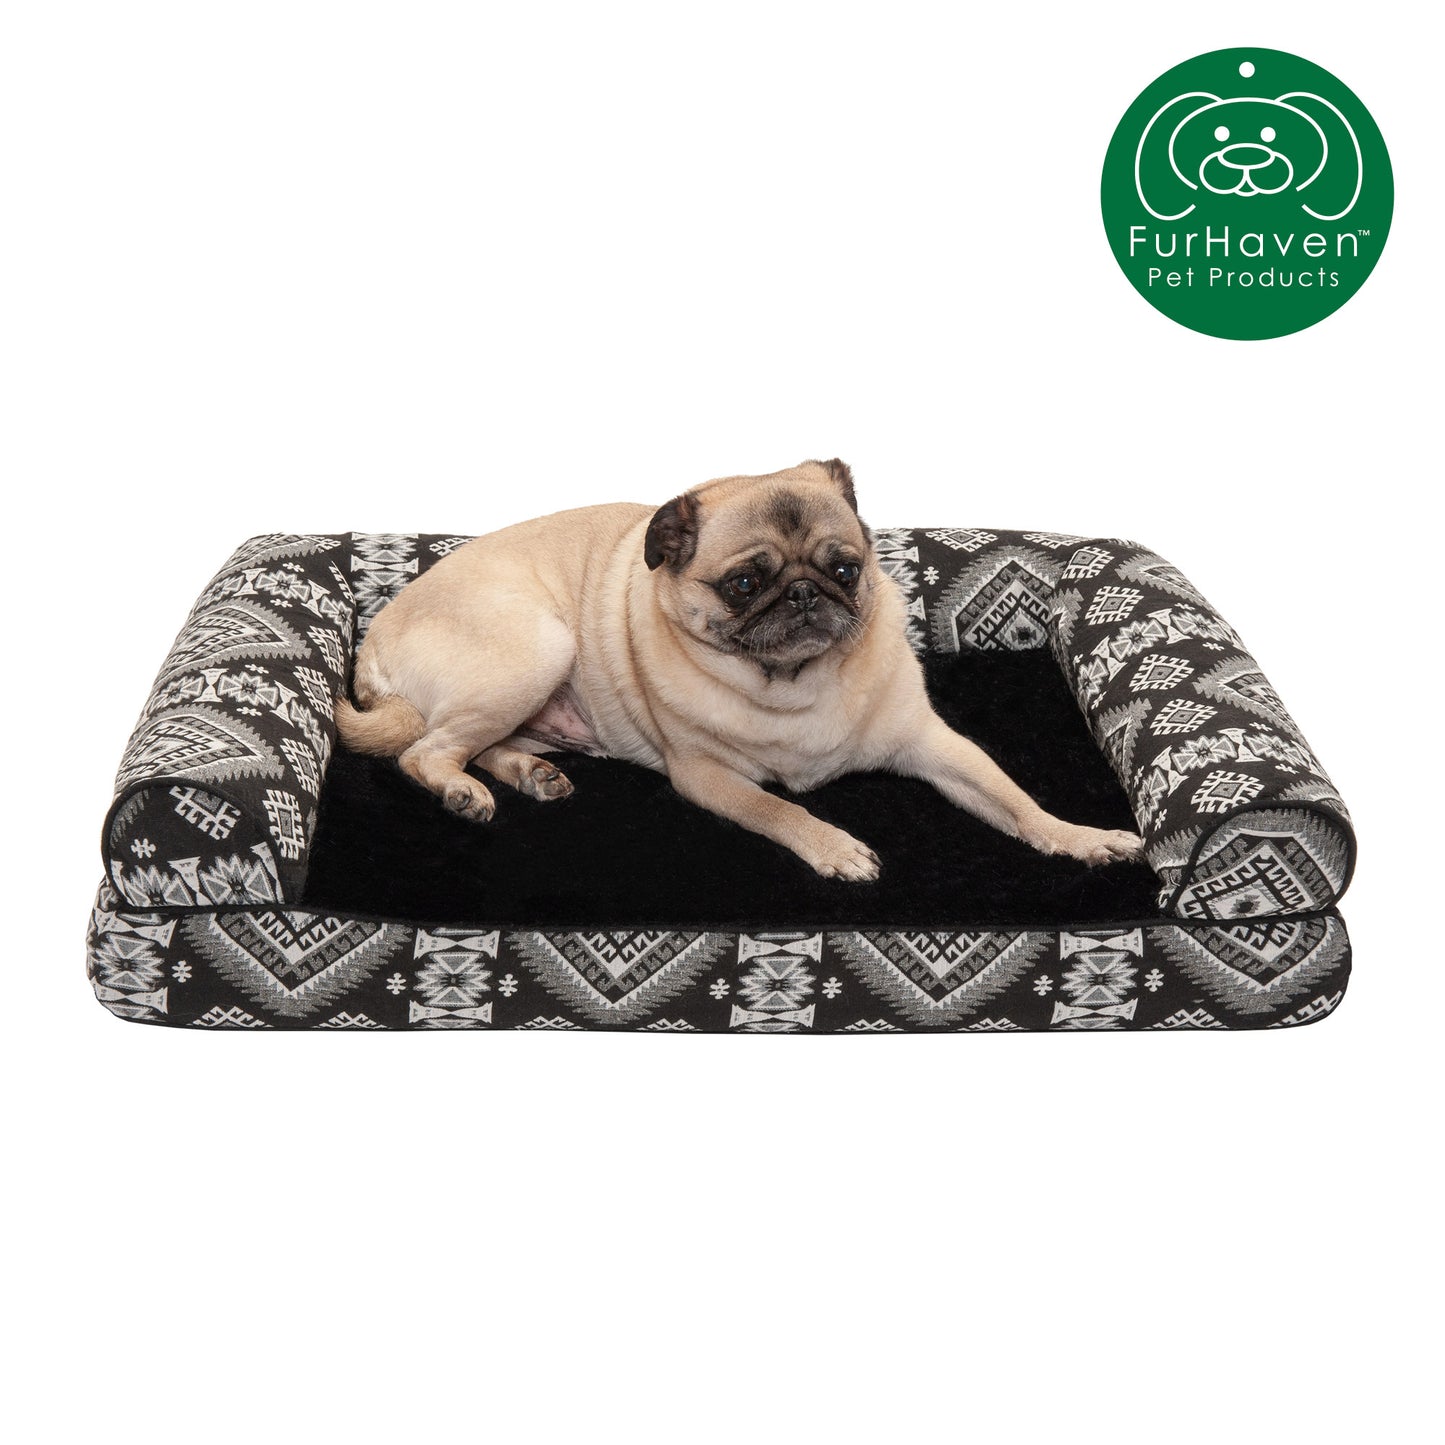 Southwest Kilim Plush Sofa-Style Pet Bed